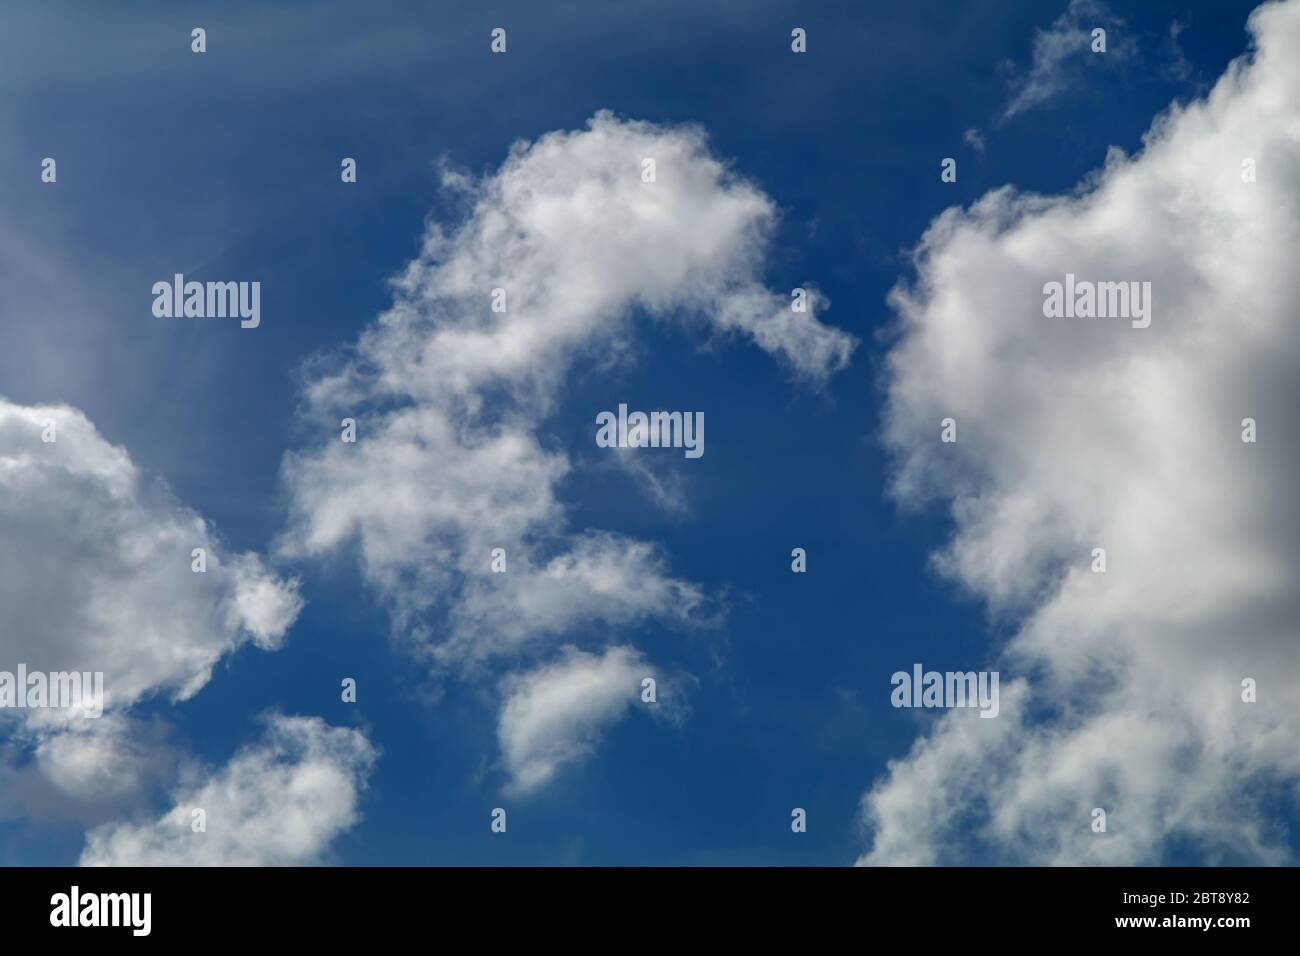 La formation de nuages against a blue sky Banque D'Images